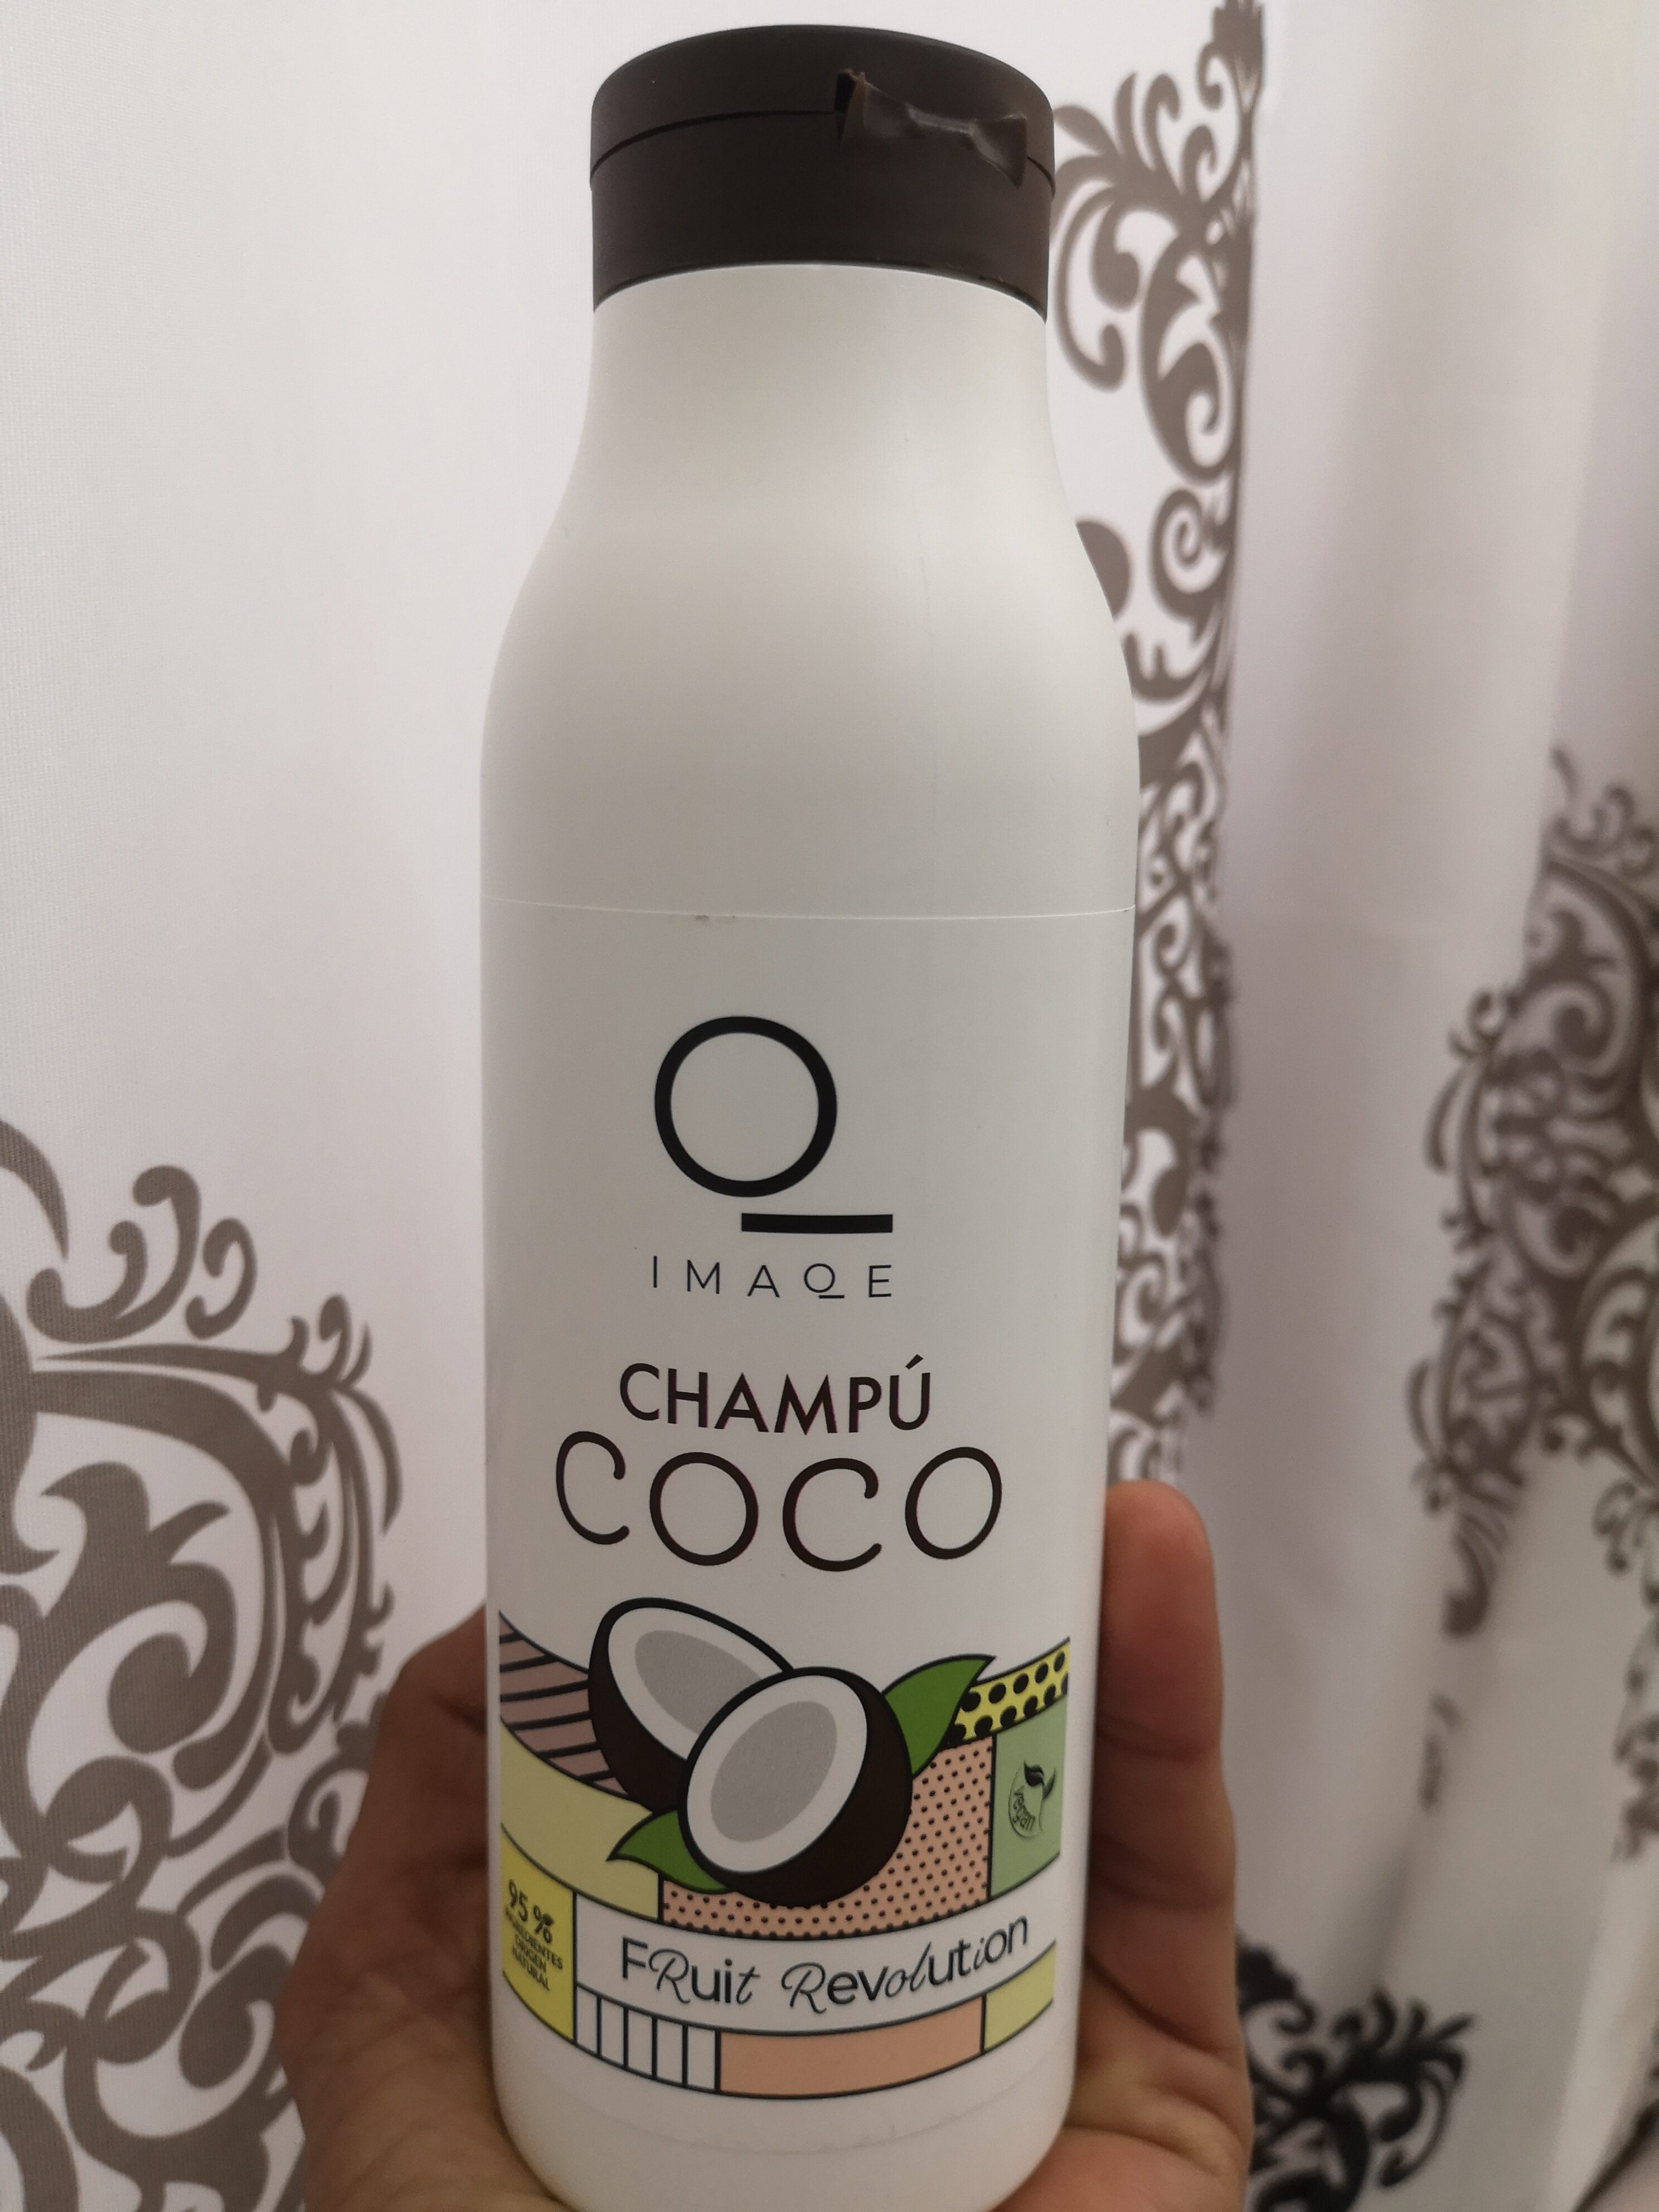 Champú coco - Product - es